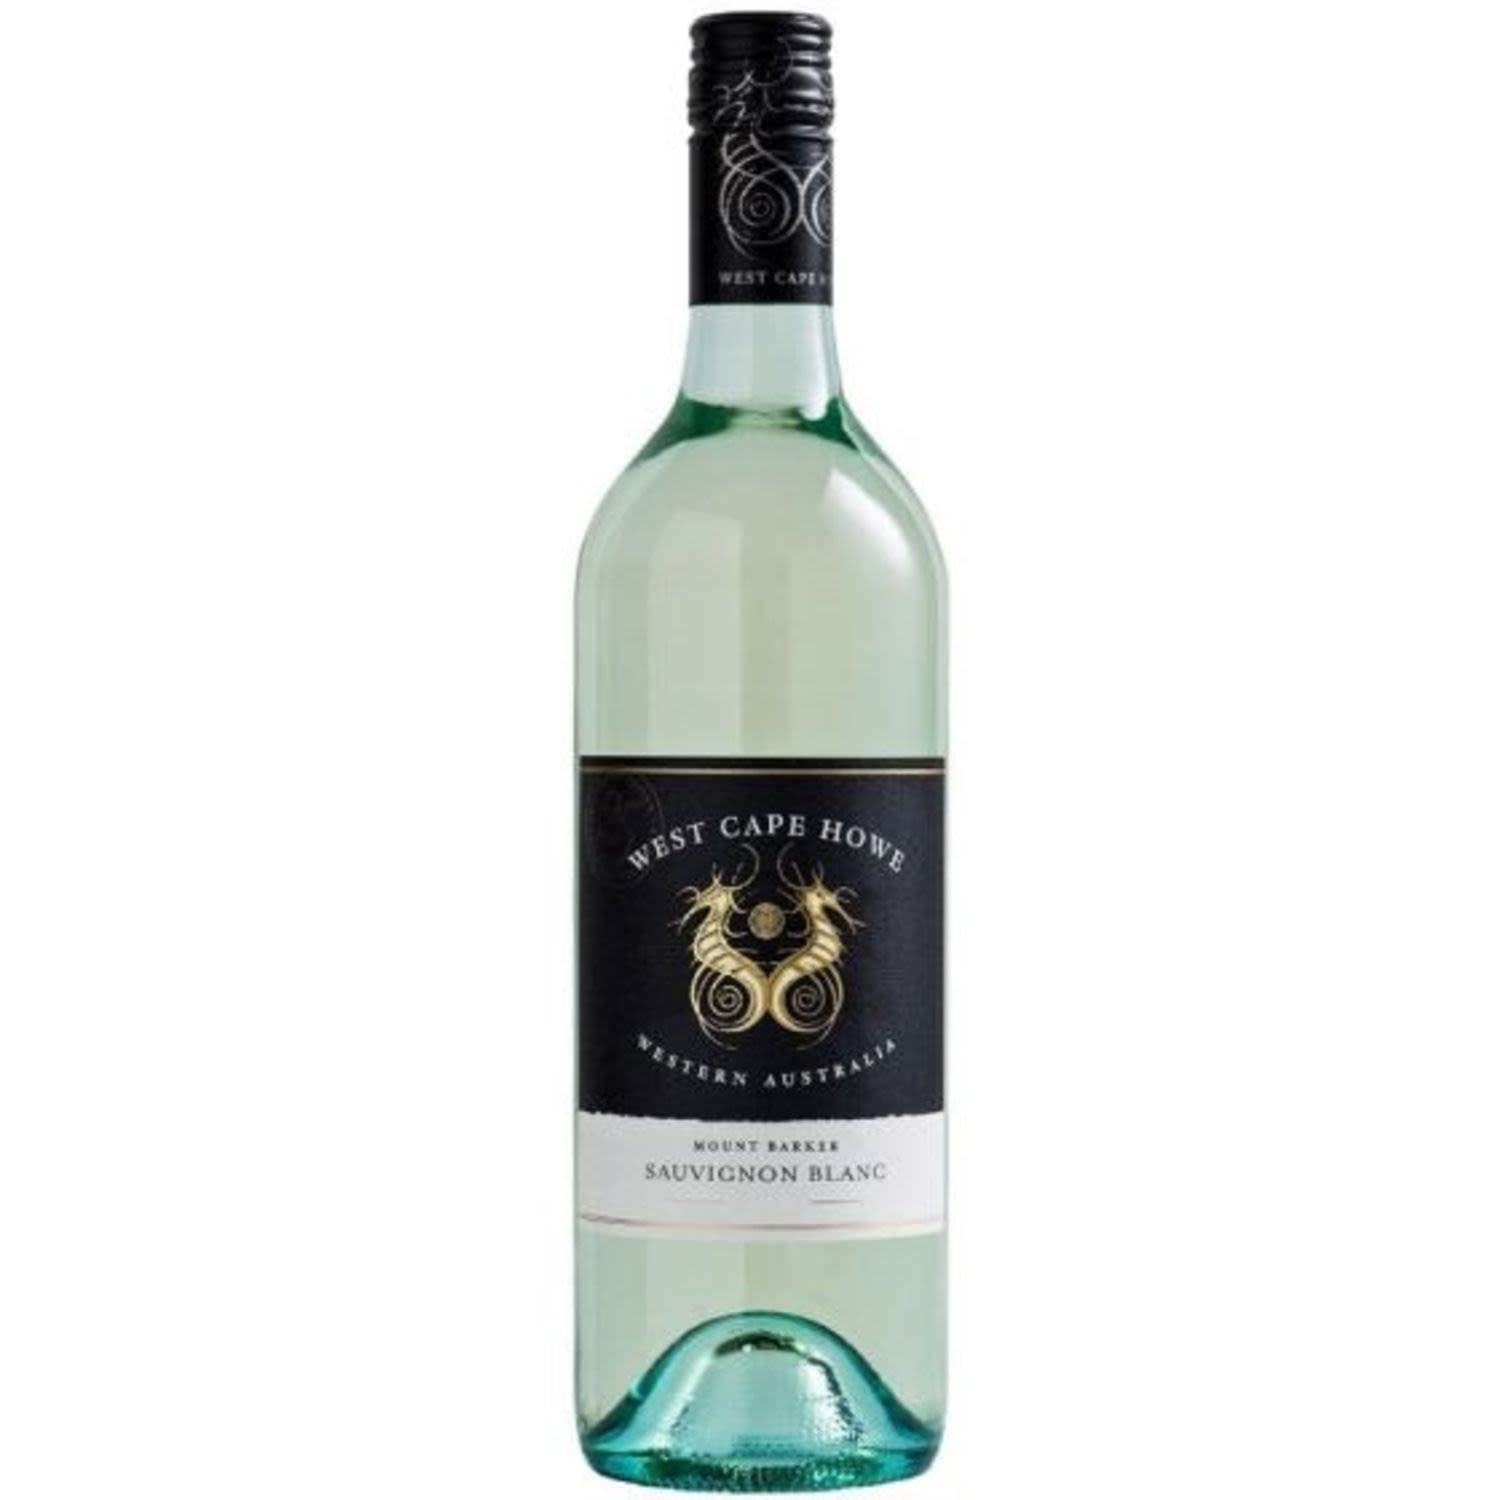 West Cape Howe Sauvignon Blanc 750mL Bottle